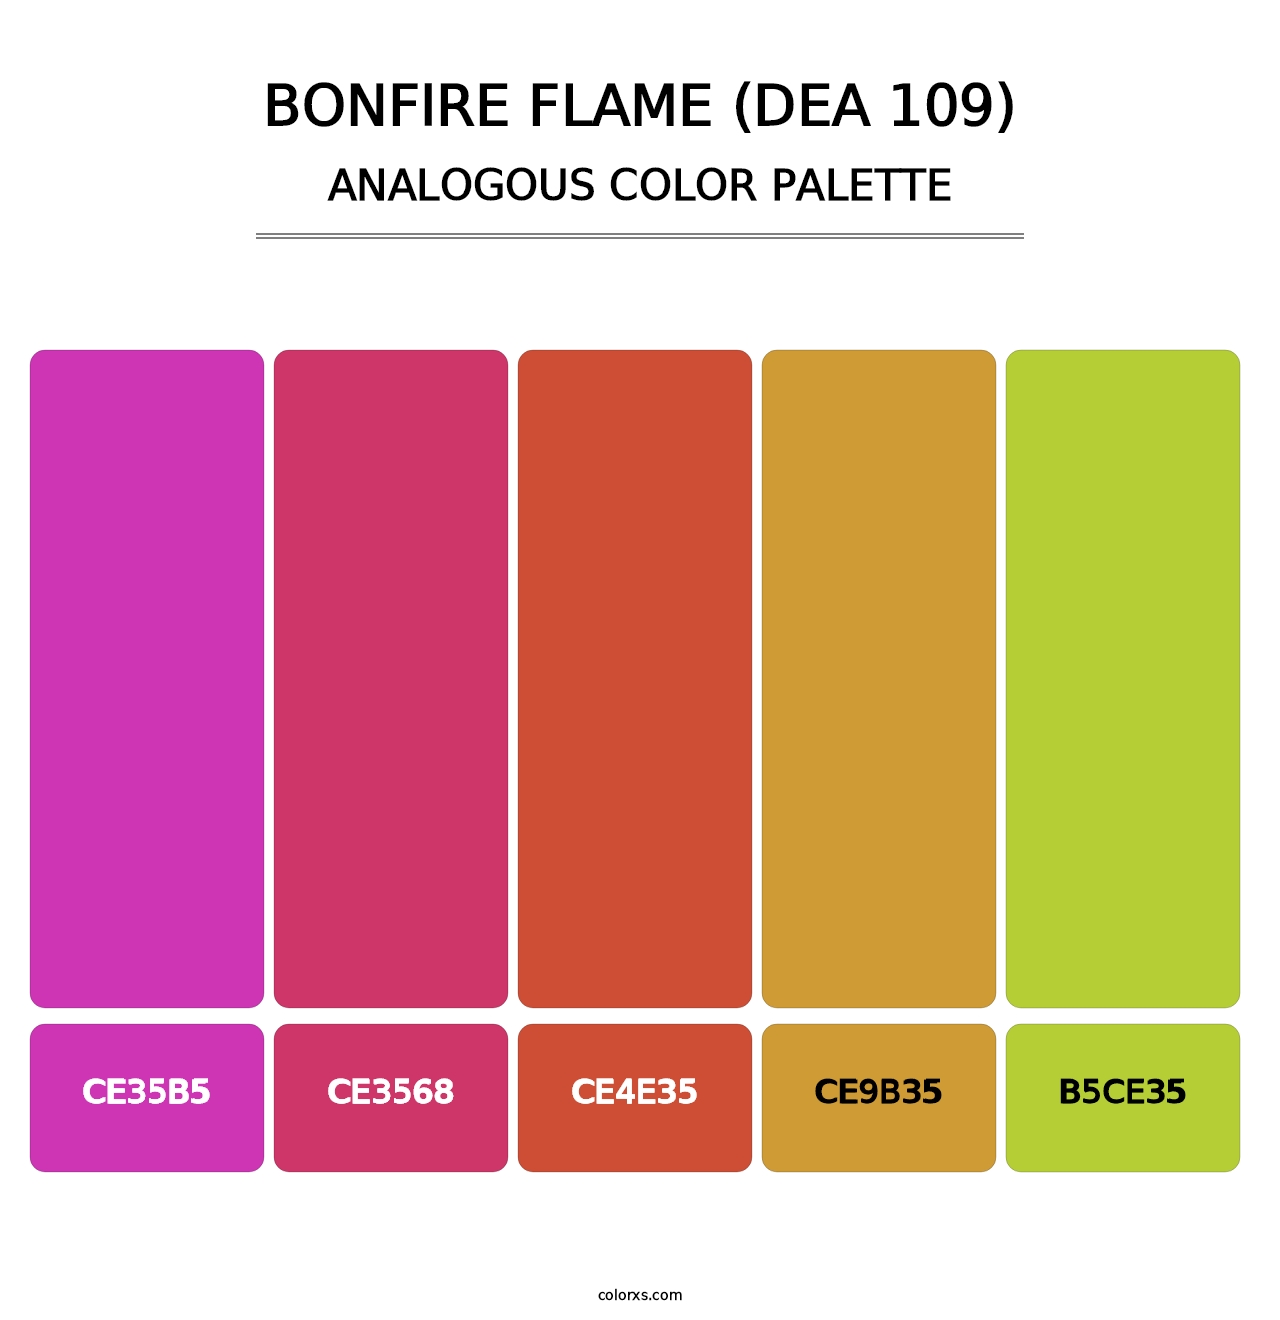 Bonfire Flame (DEA 109) - Analogous Color Palette